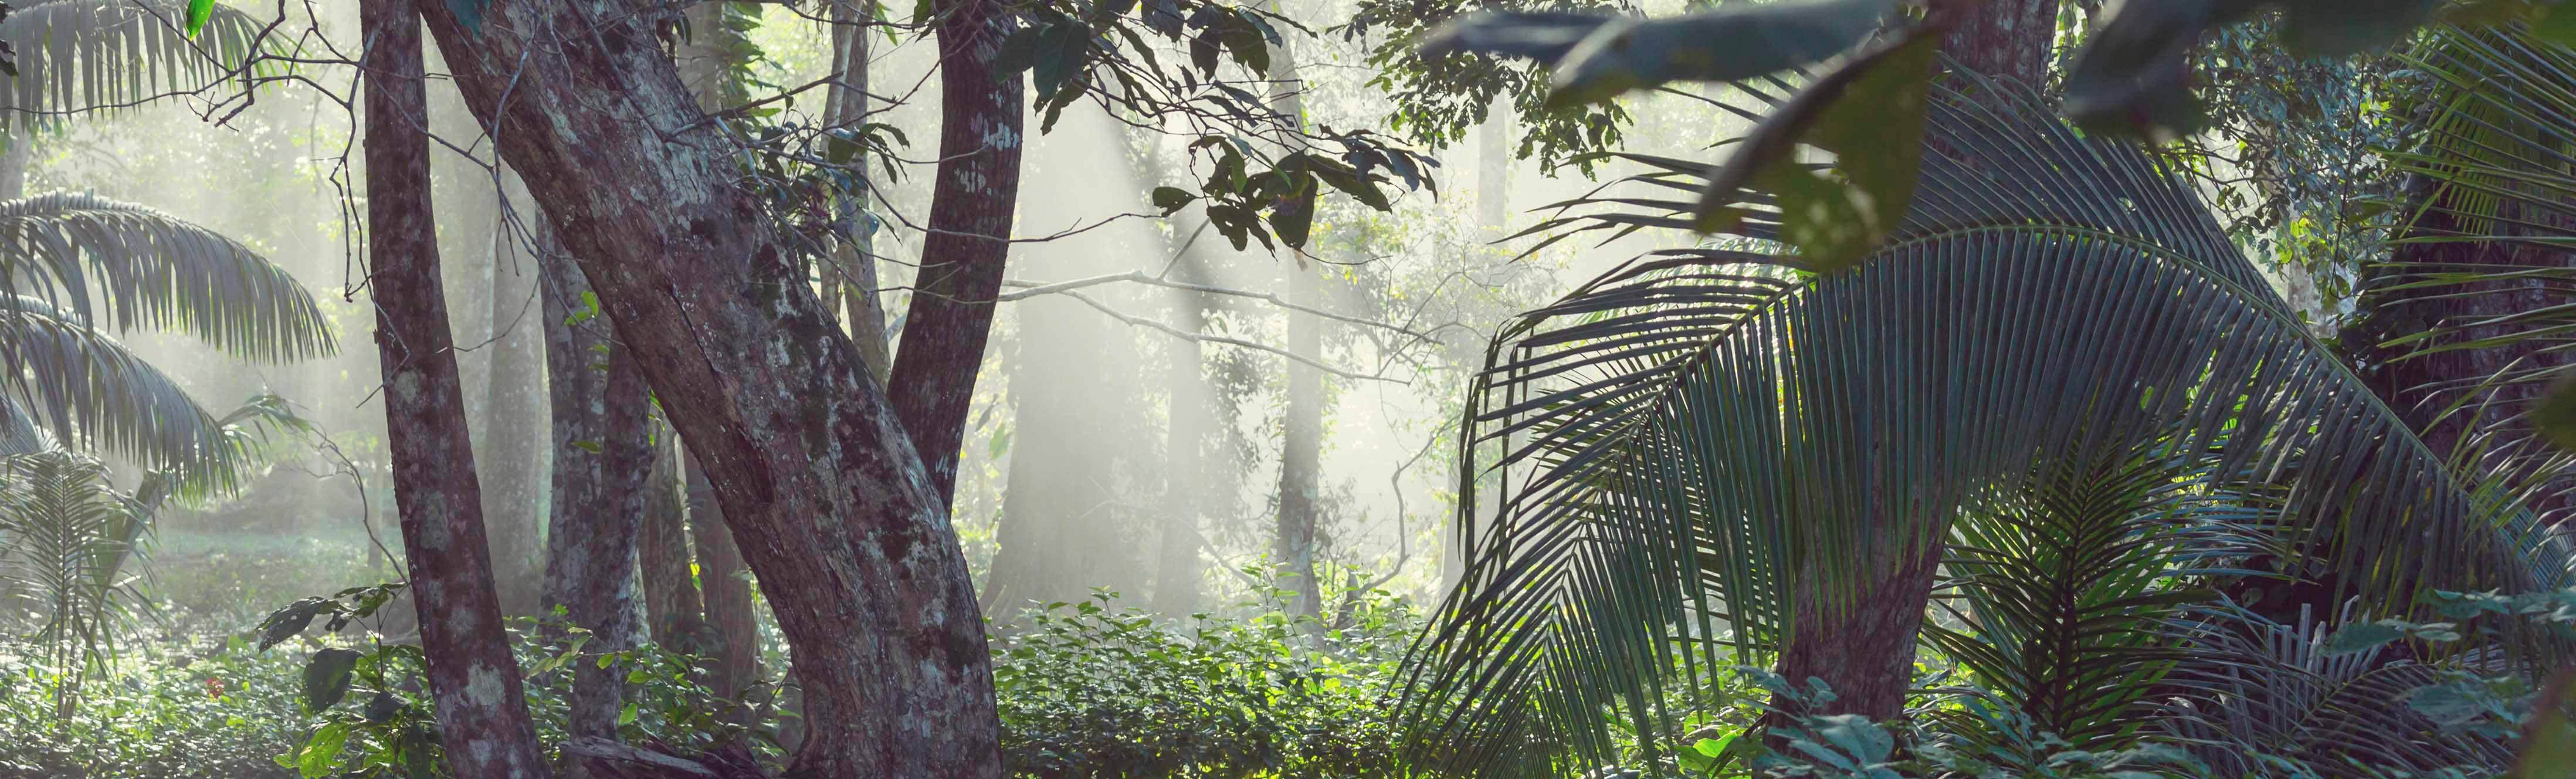 Costa Rica, pionero en energías renovables, sostenibilidad y ecoturismo.